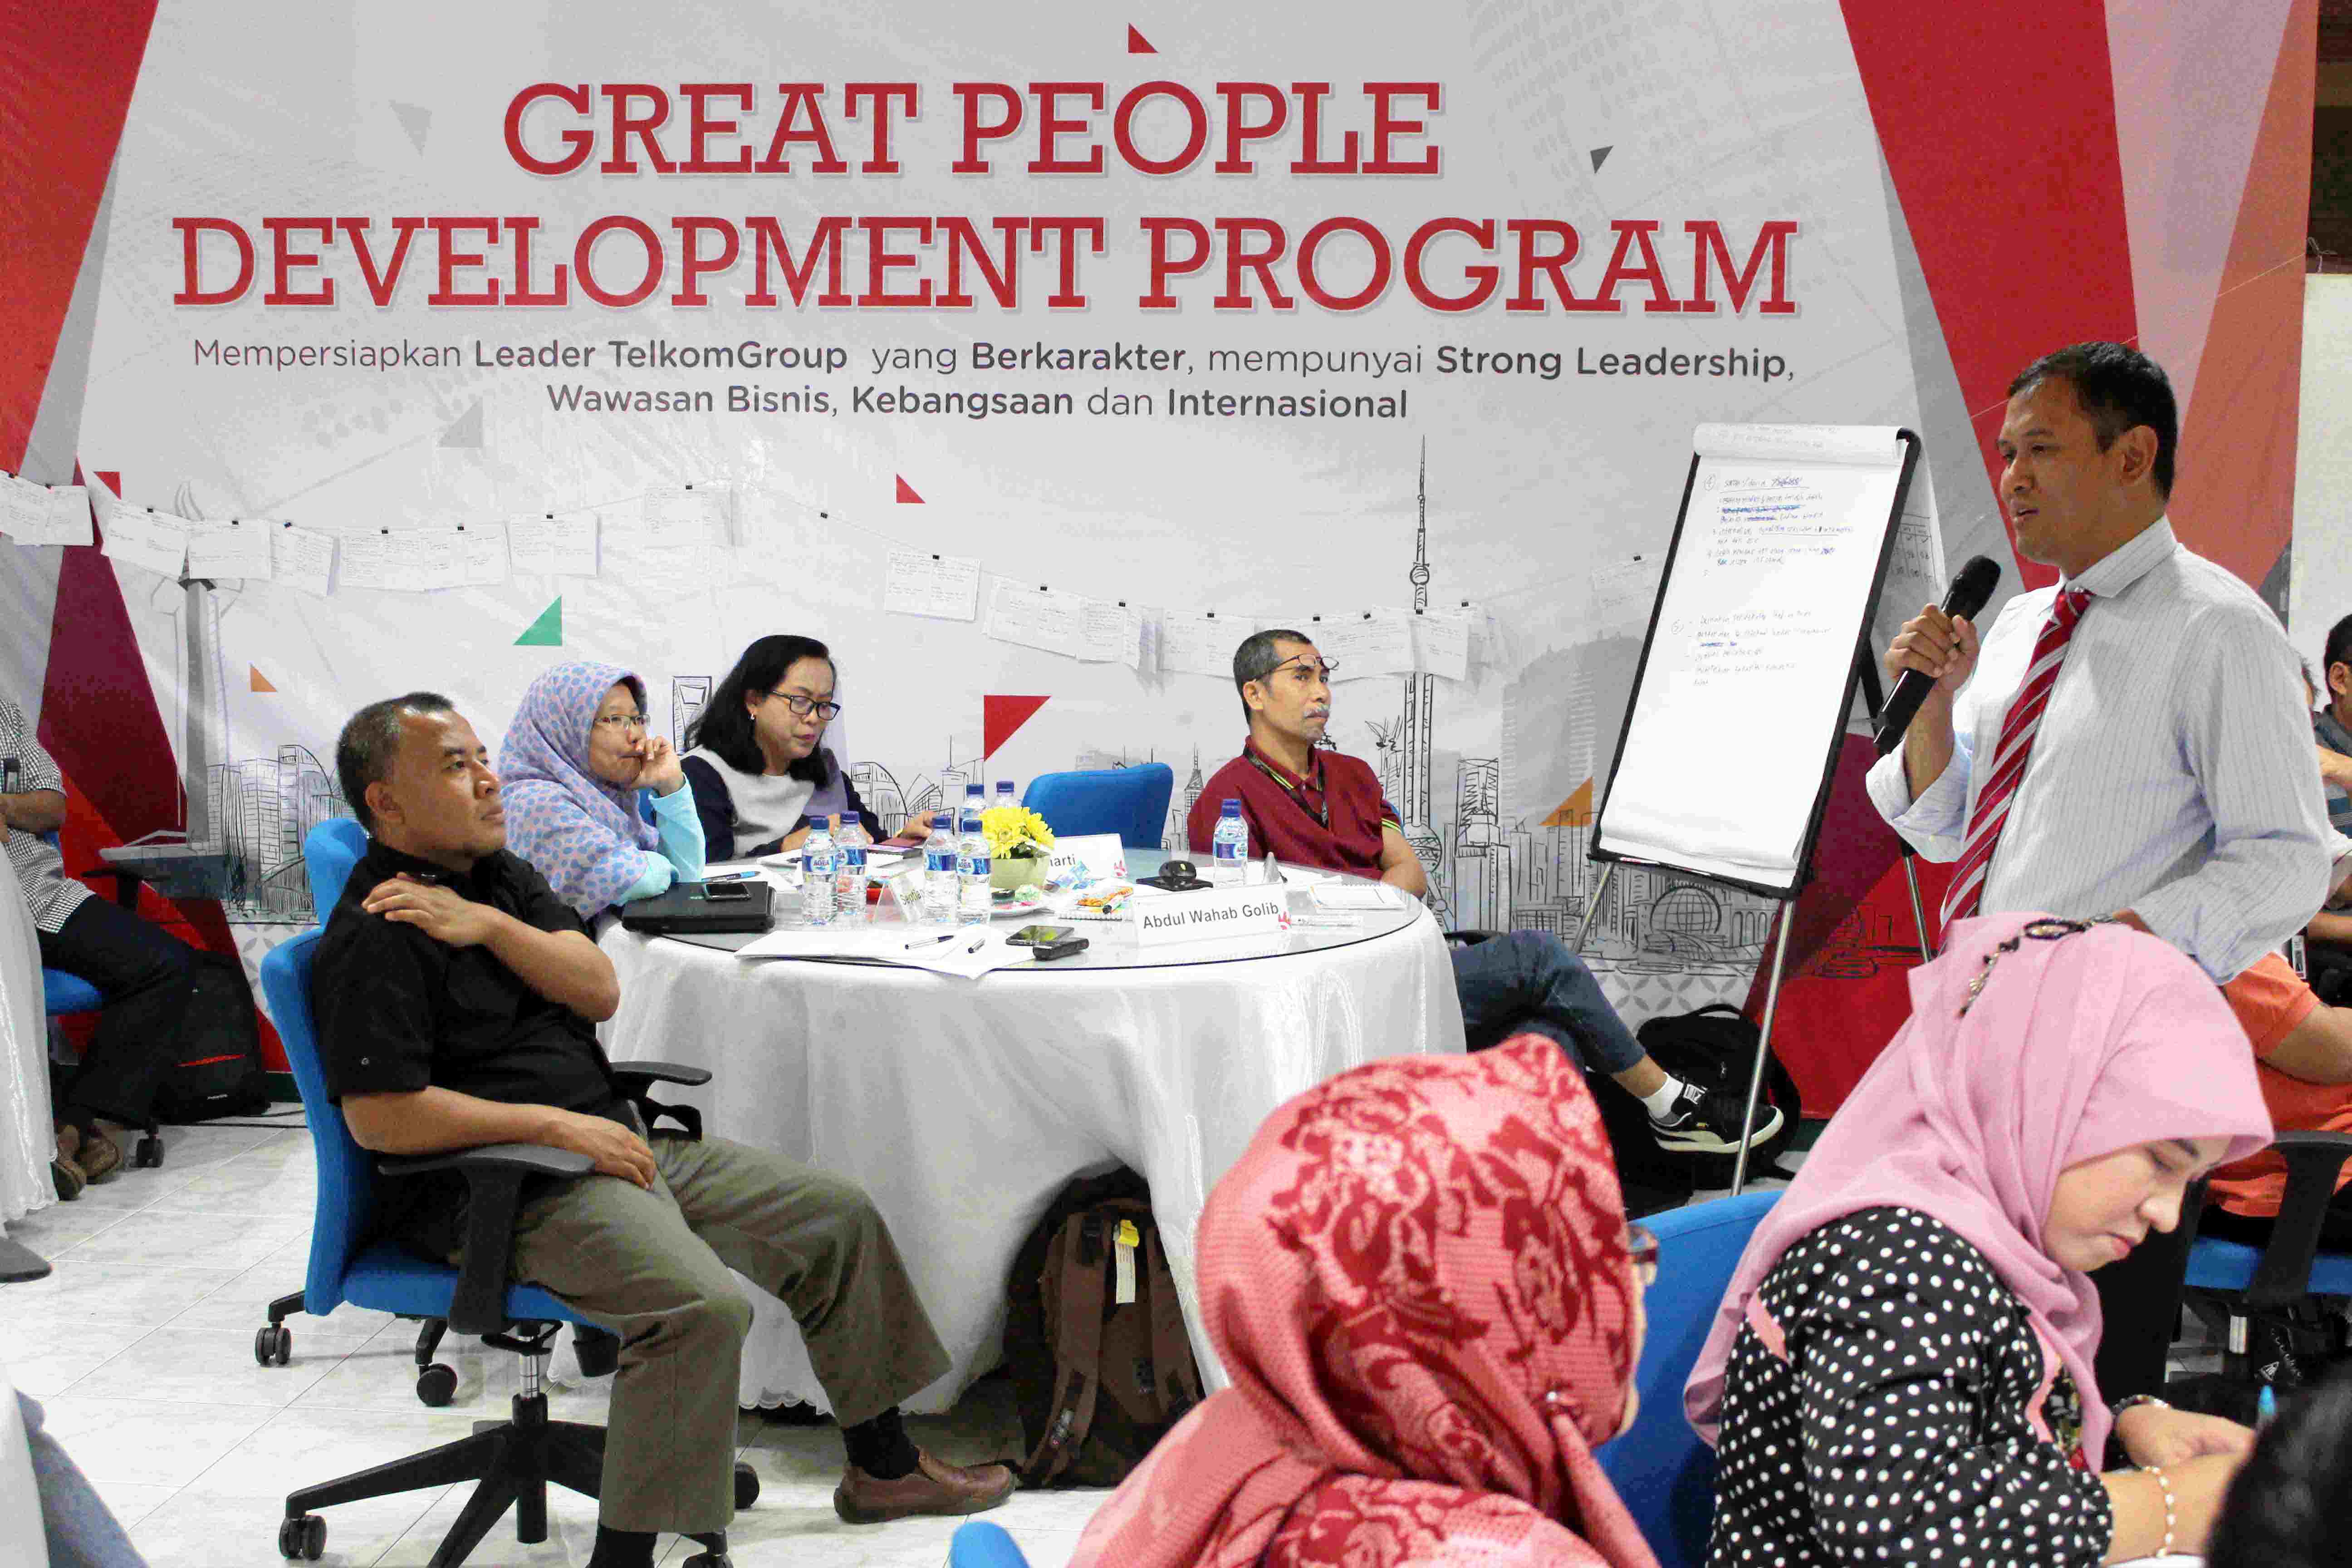 Partisipasi PG Dalam “Great People Development Program” PT Telkom